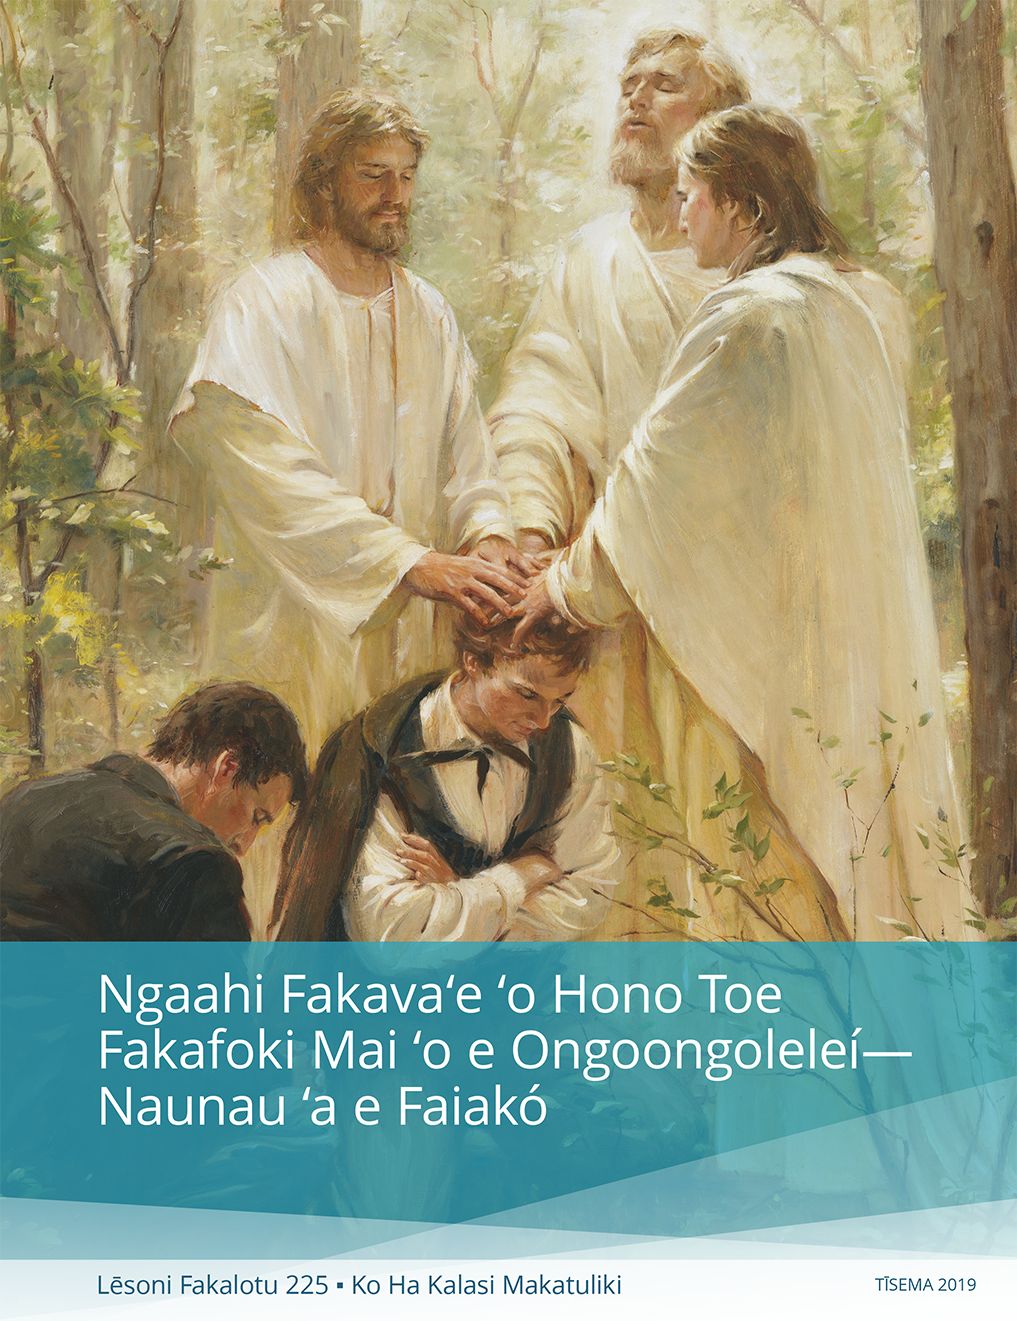 Ngaahi Fakavaʻe ʻo Hono Toe Fakafoki Mai ʻo e Ongoongoleleí - Naunau Teuteu ki he Kalasí (Lēsoni Fakalotu 225)